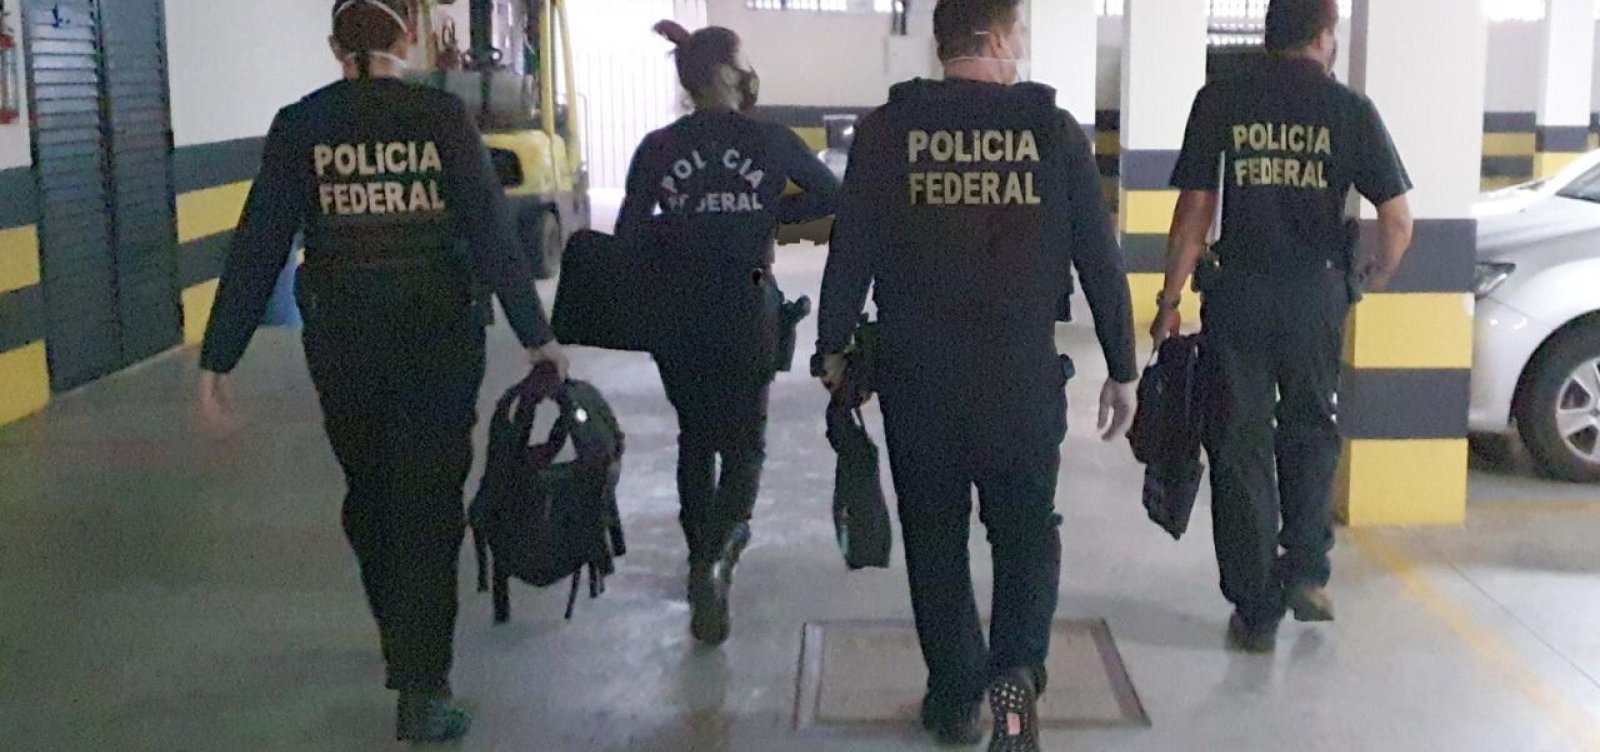 PF prende suspeitos de organização criminosa no Rio Grande do Norte